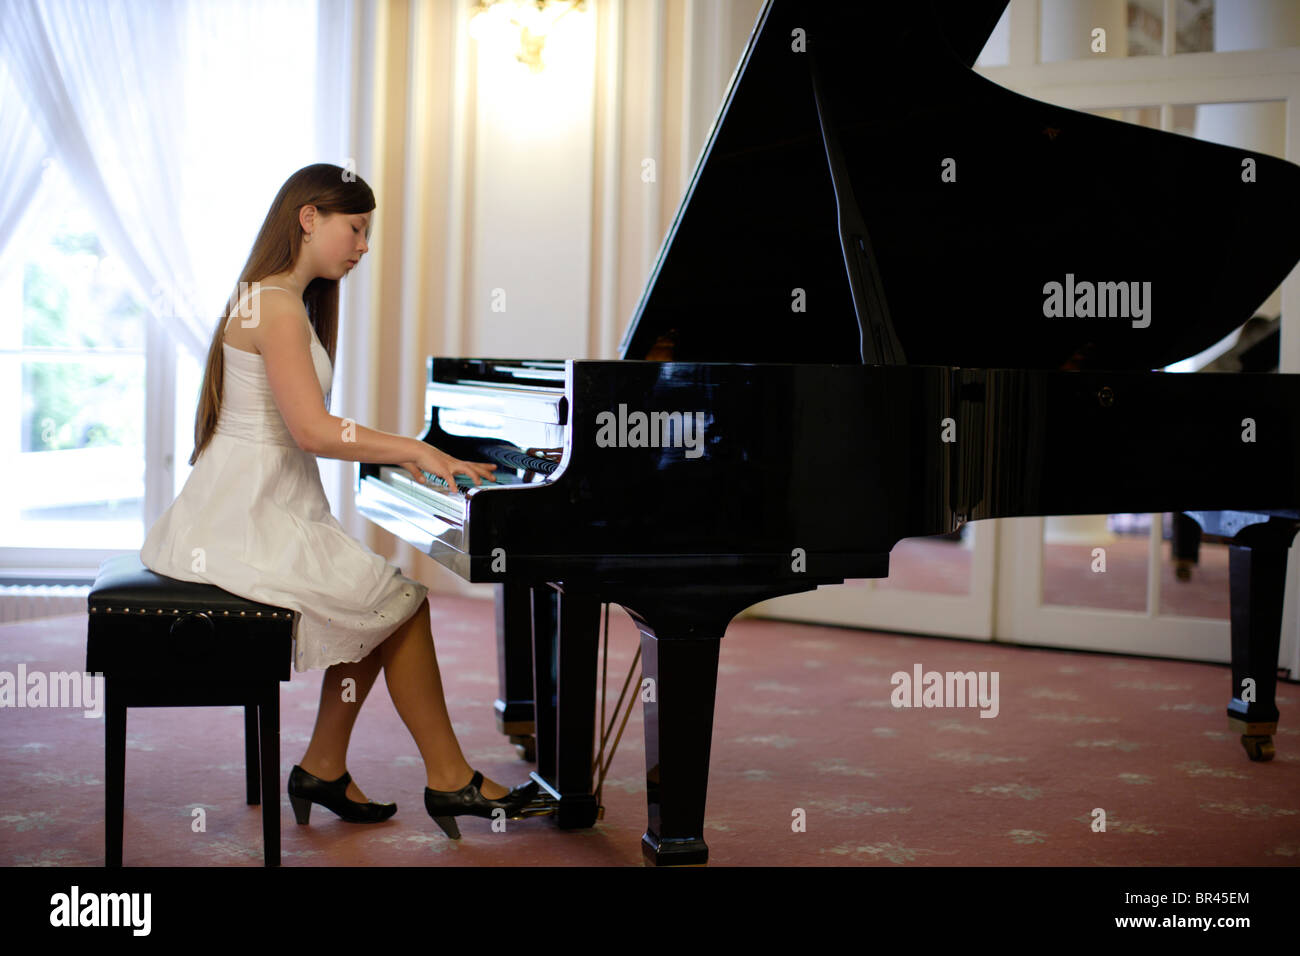 Mujer tocando el piano Fotografía de Alamy